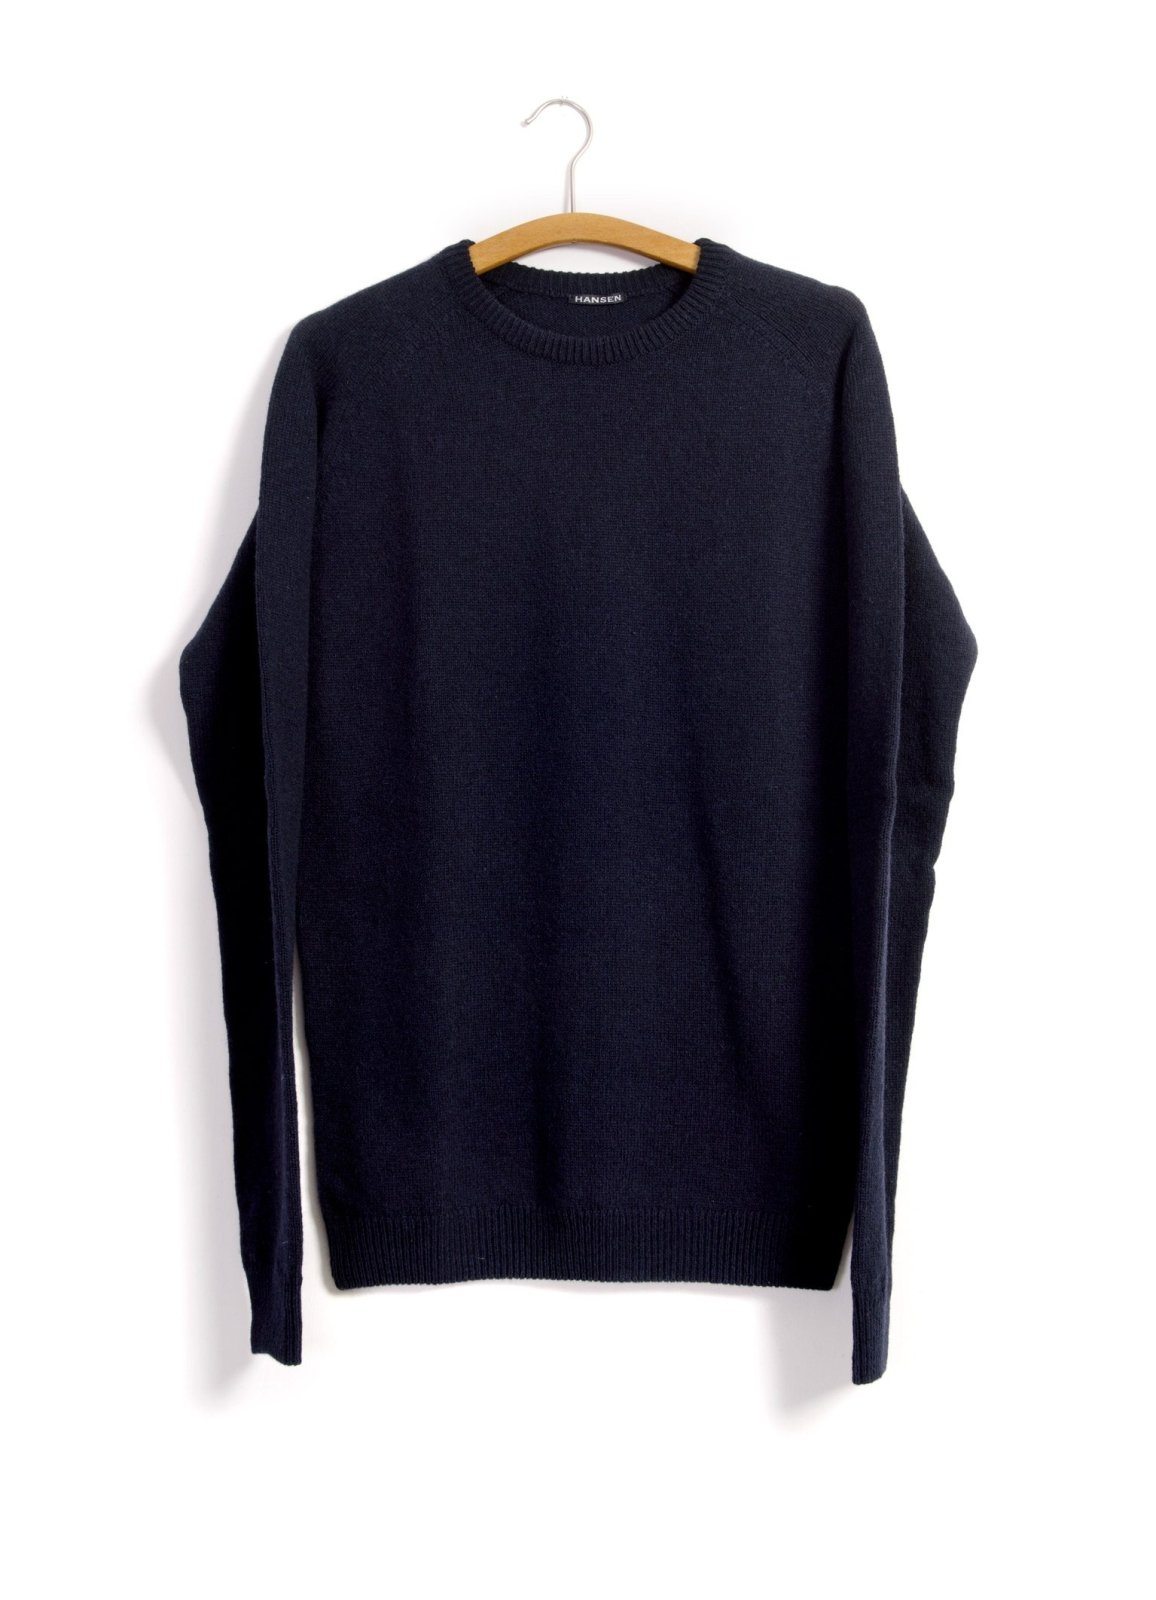 HANSEN Garments - ALLAN | Single Stitch Crewneck Sweater | Navy - HANSEN Garments